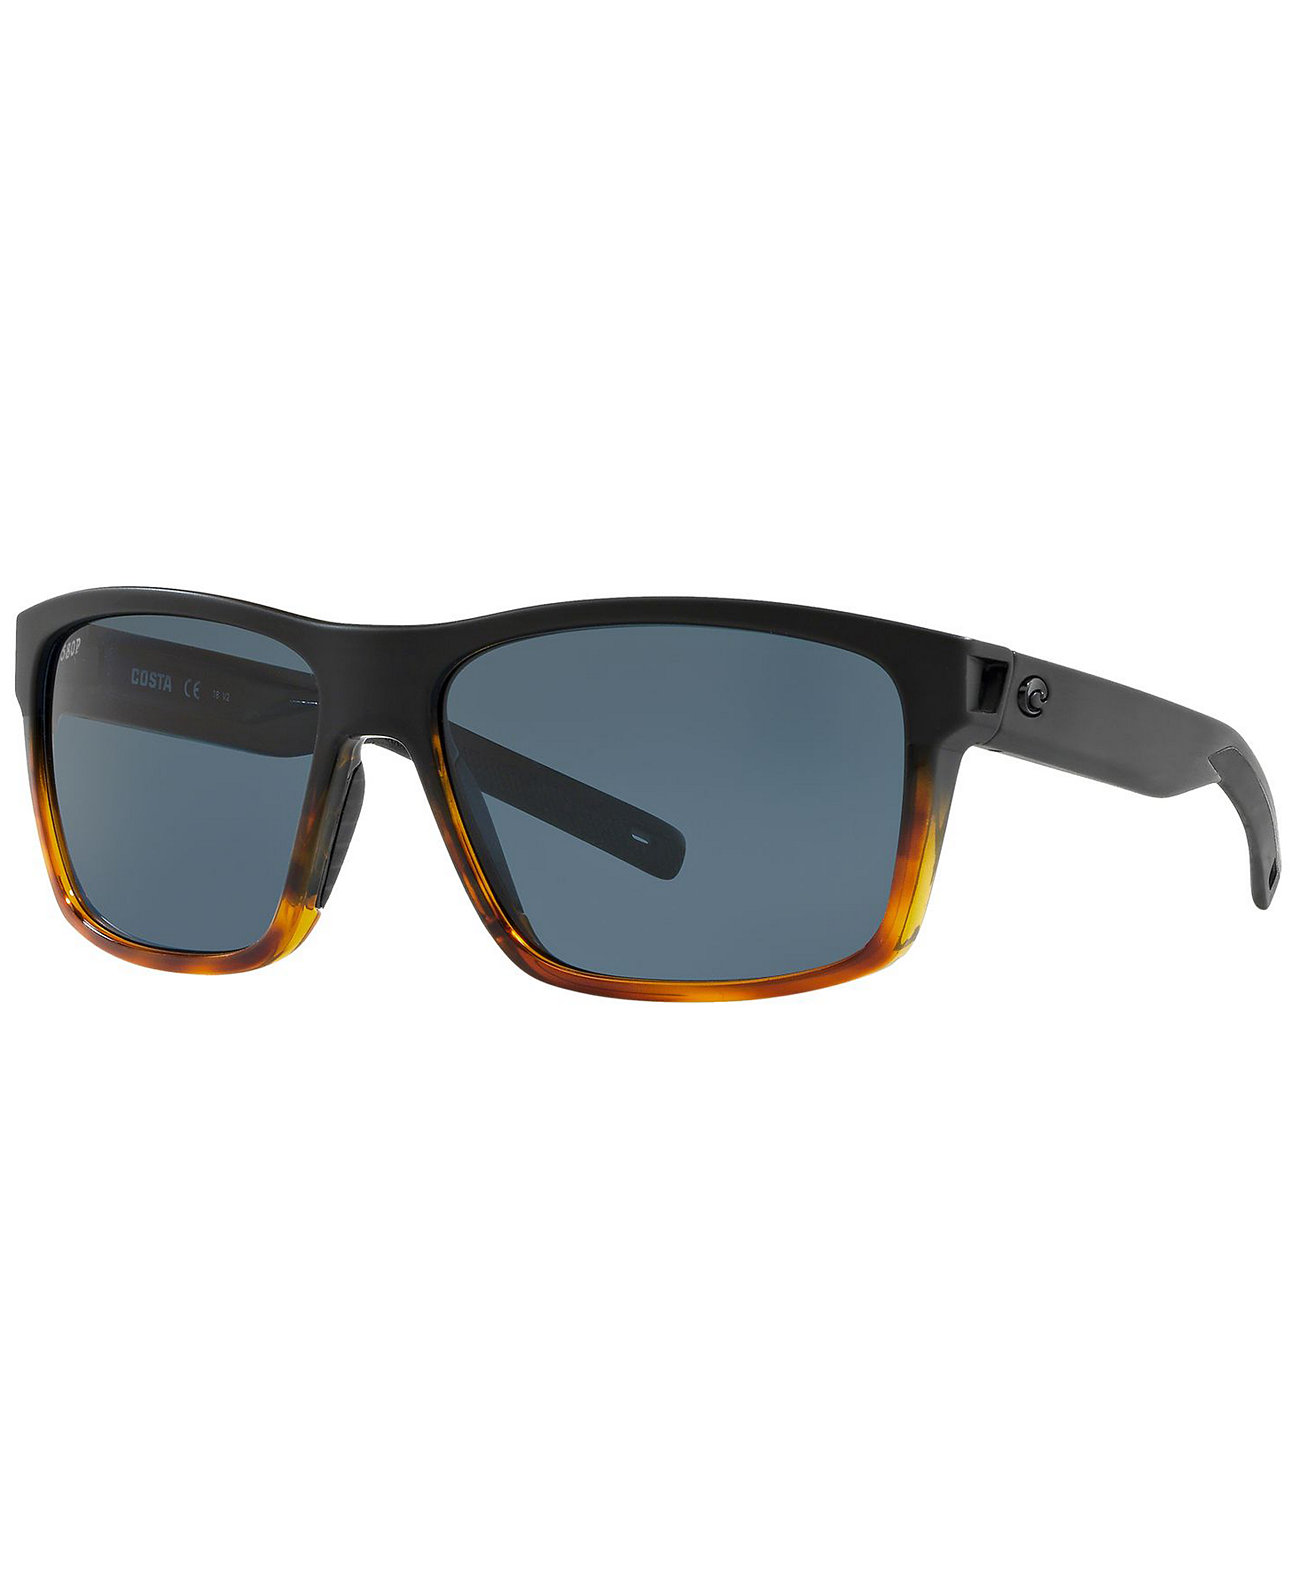 Поляризованные солнцезащитные очки, SLACK TIDE 60 COSTA DEL MAR